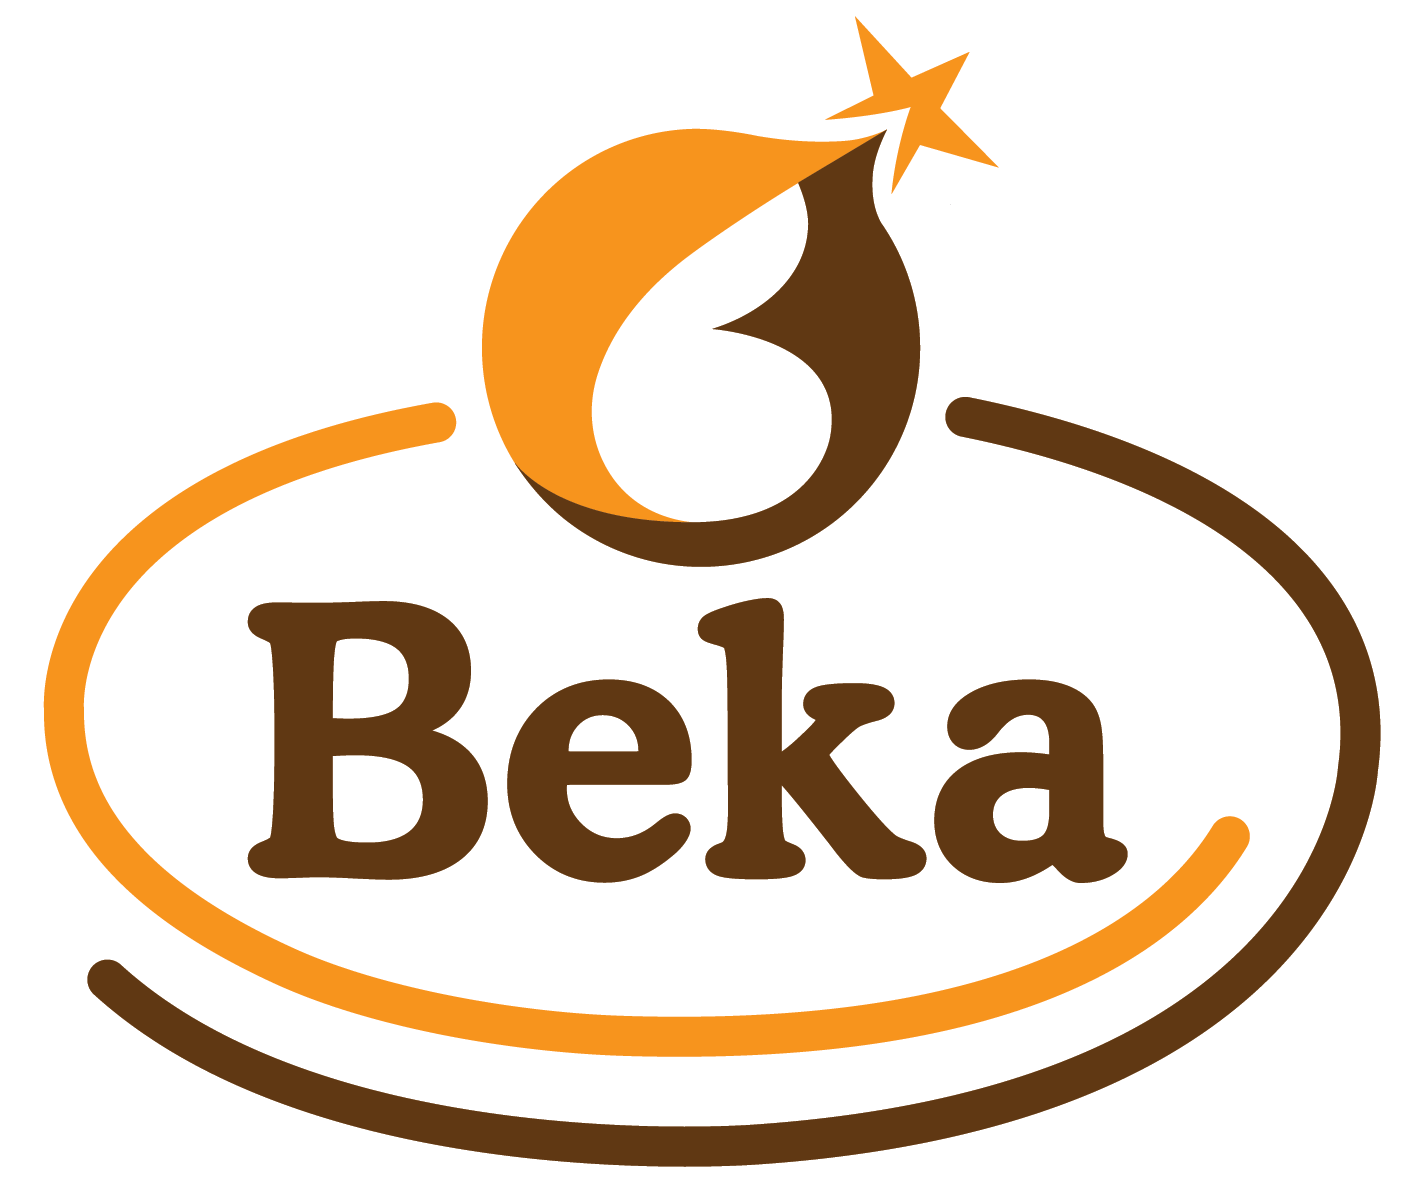 Beka General Business - Serve The